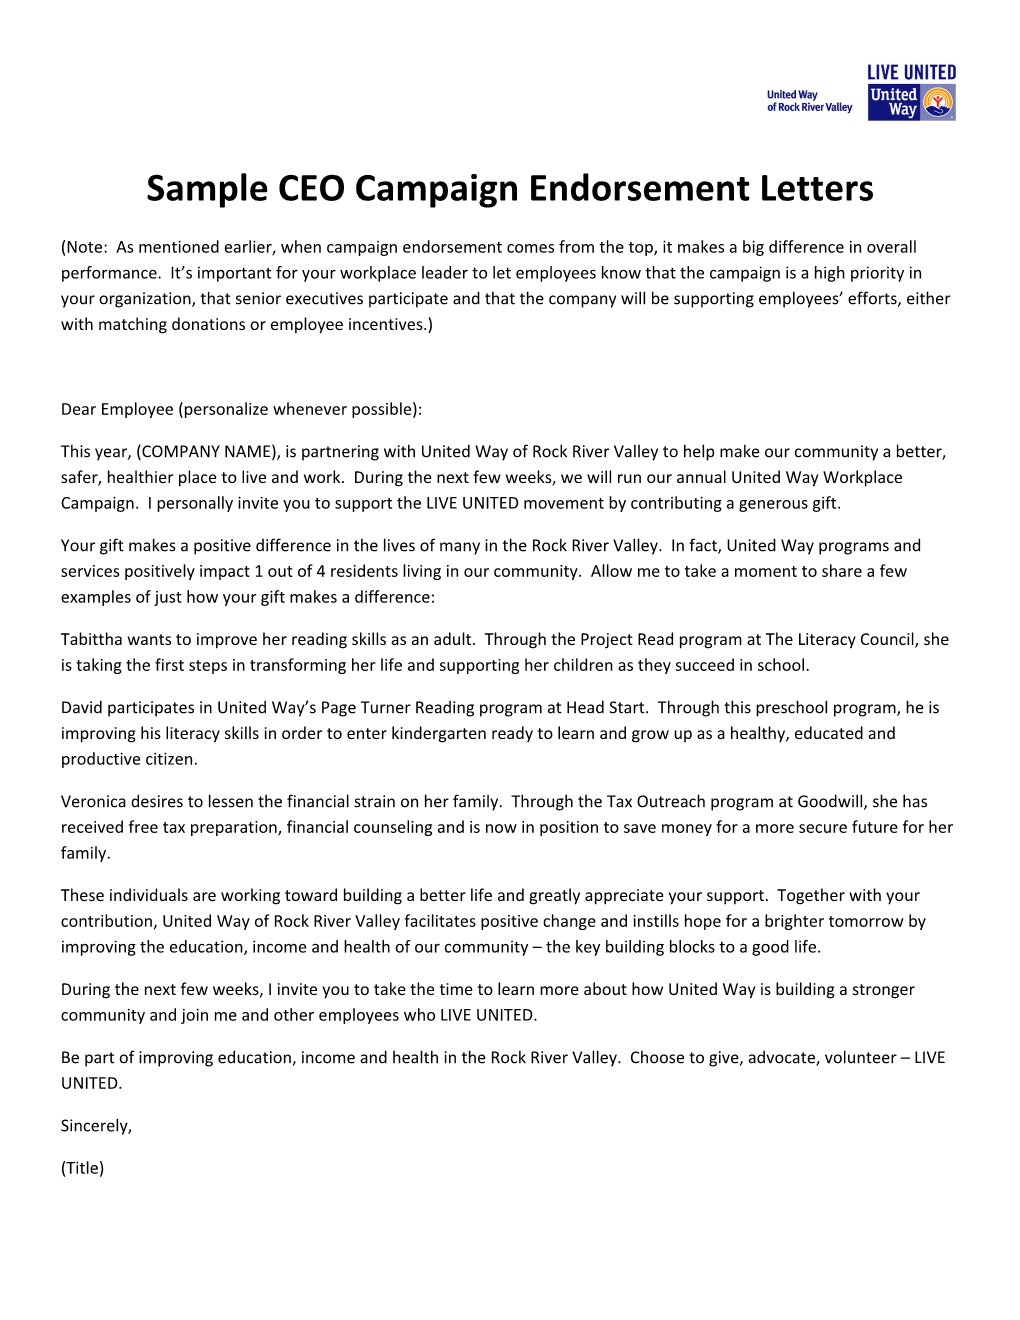 Sample CEO Campaign Endorsement Letters